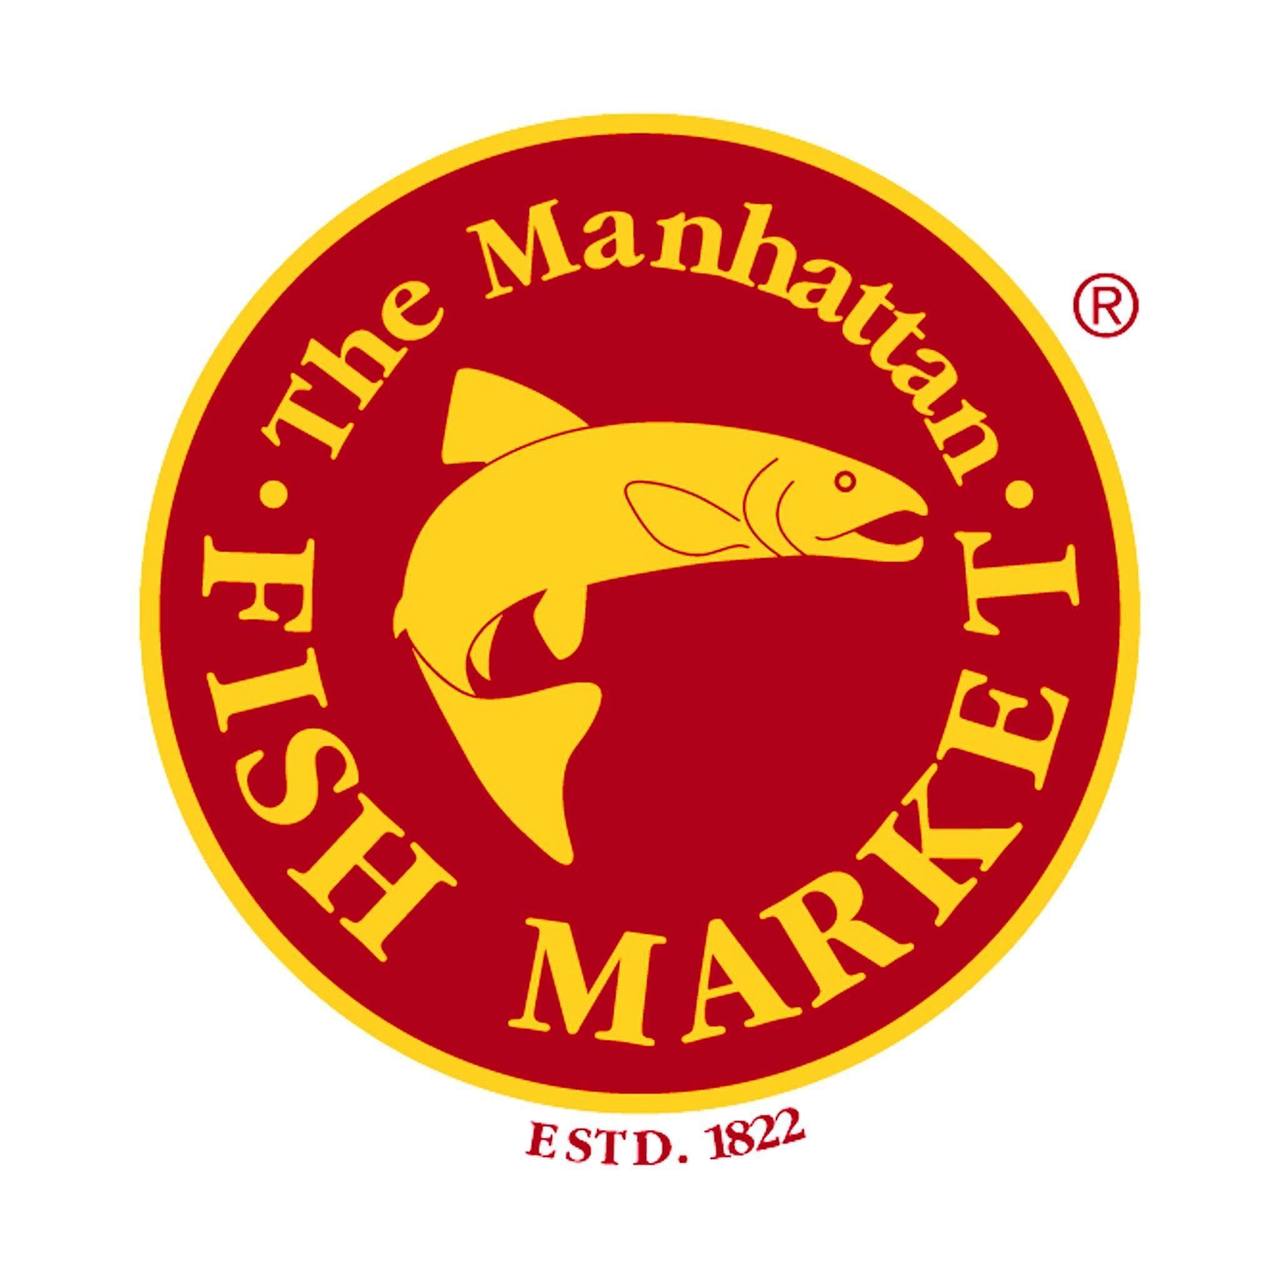 Manhattan fish market